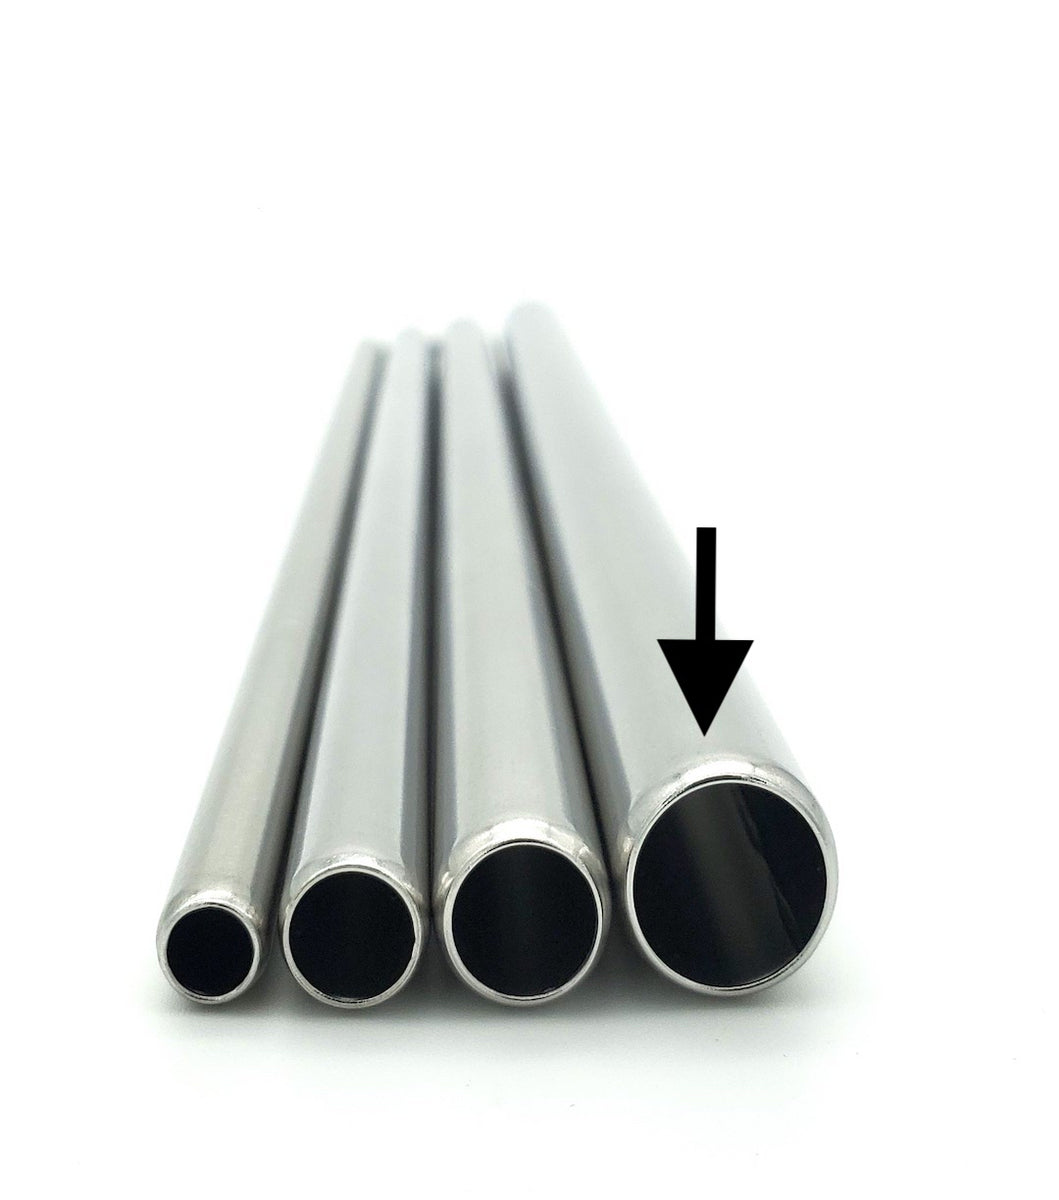 Bulk Smoothie Metal Straws at Wholesale Prices — The Ecoporium